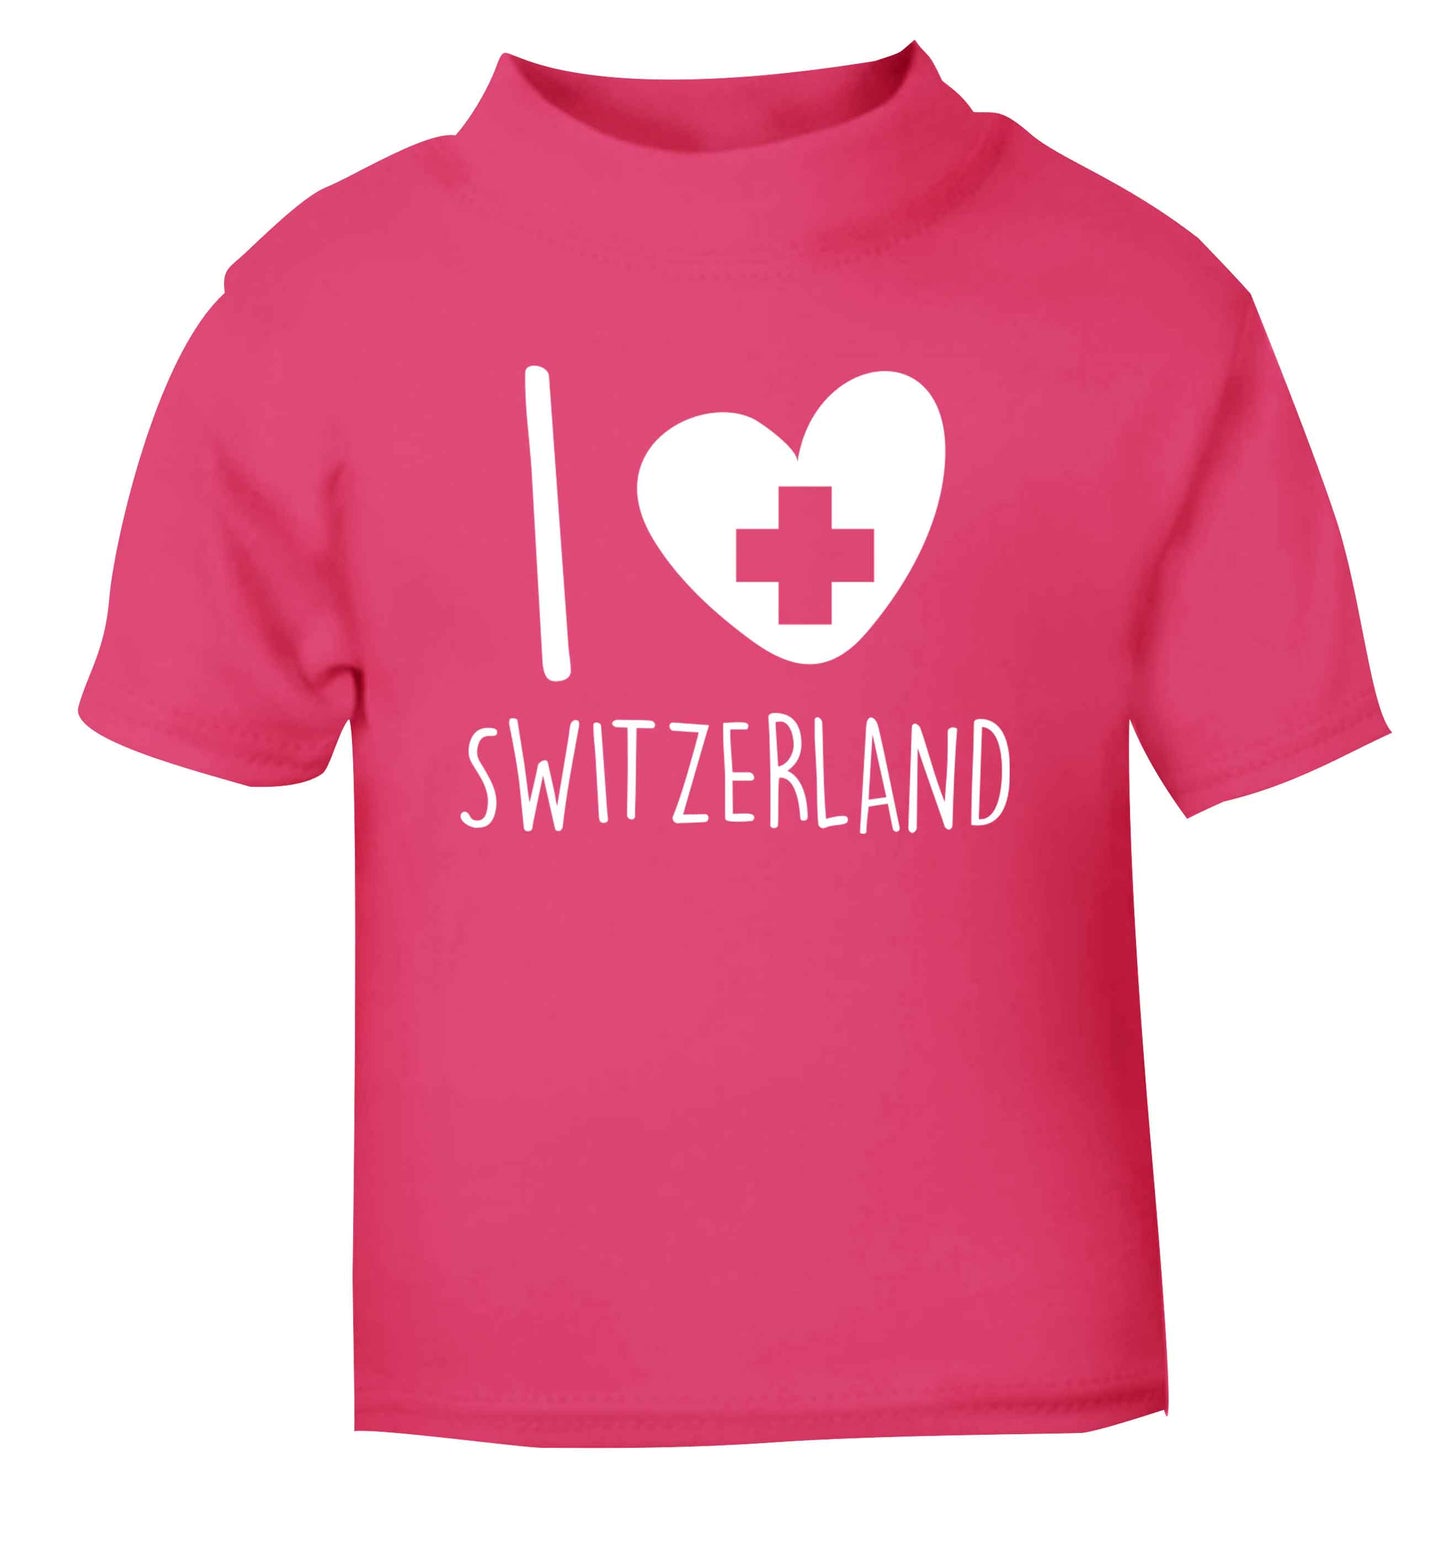 I love switzerland pink Baby Toddler Tshirt 2 Years